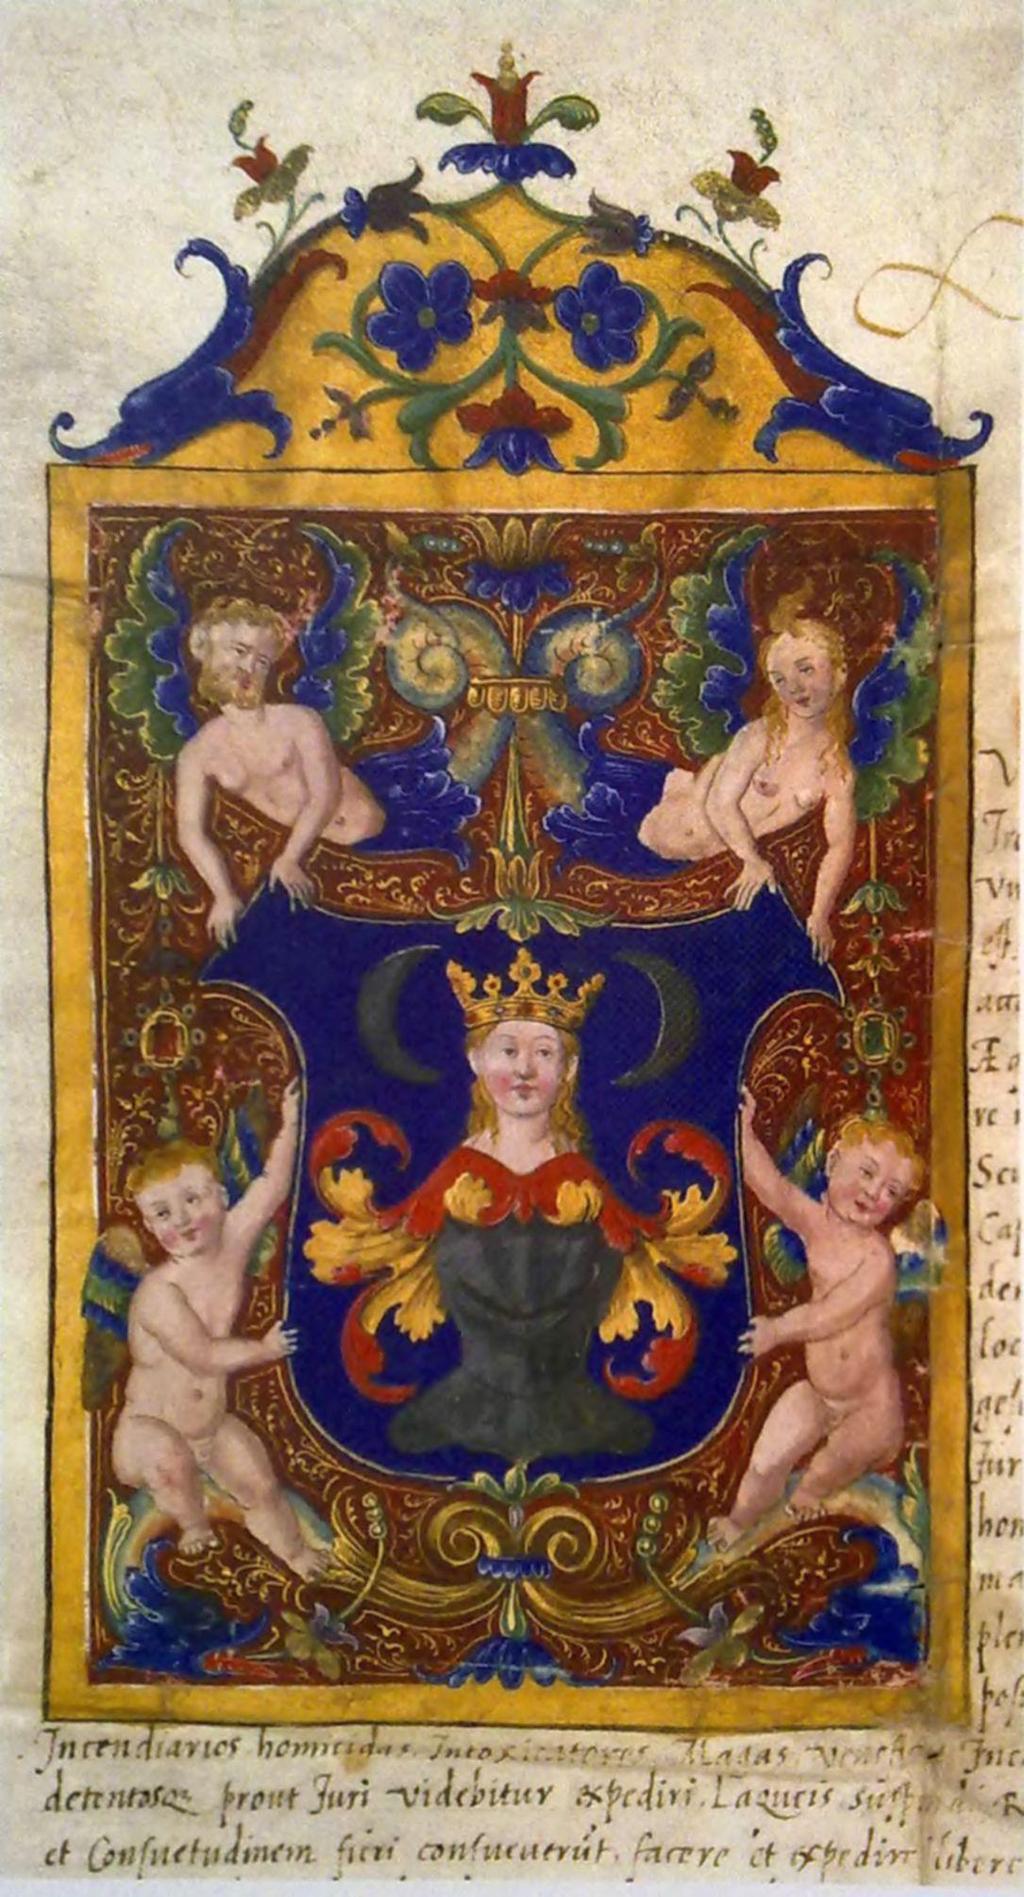 KIRÁLYLÁNY A TRÒNO A Gimesi Forgách-család címere Mária királynő arcképével maradtak az udvarba.